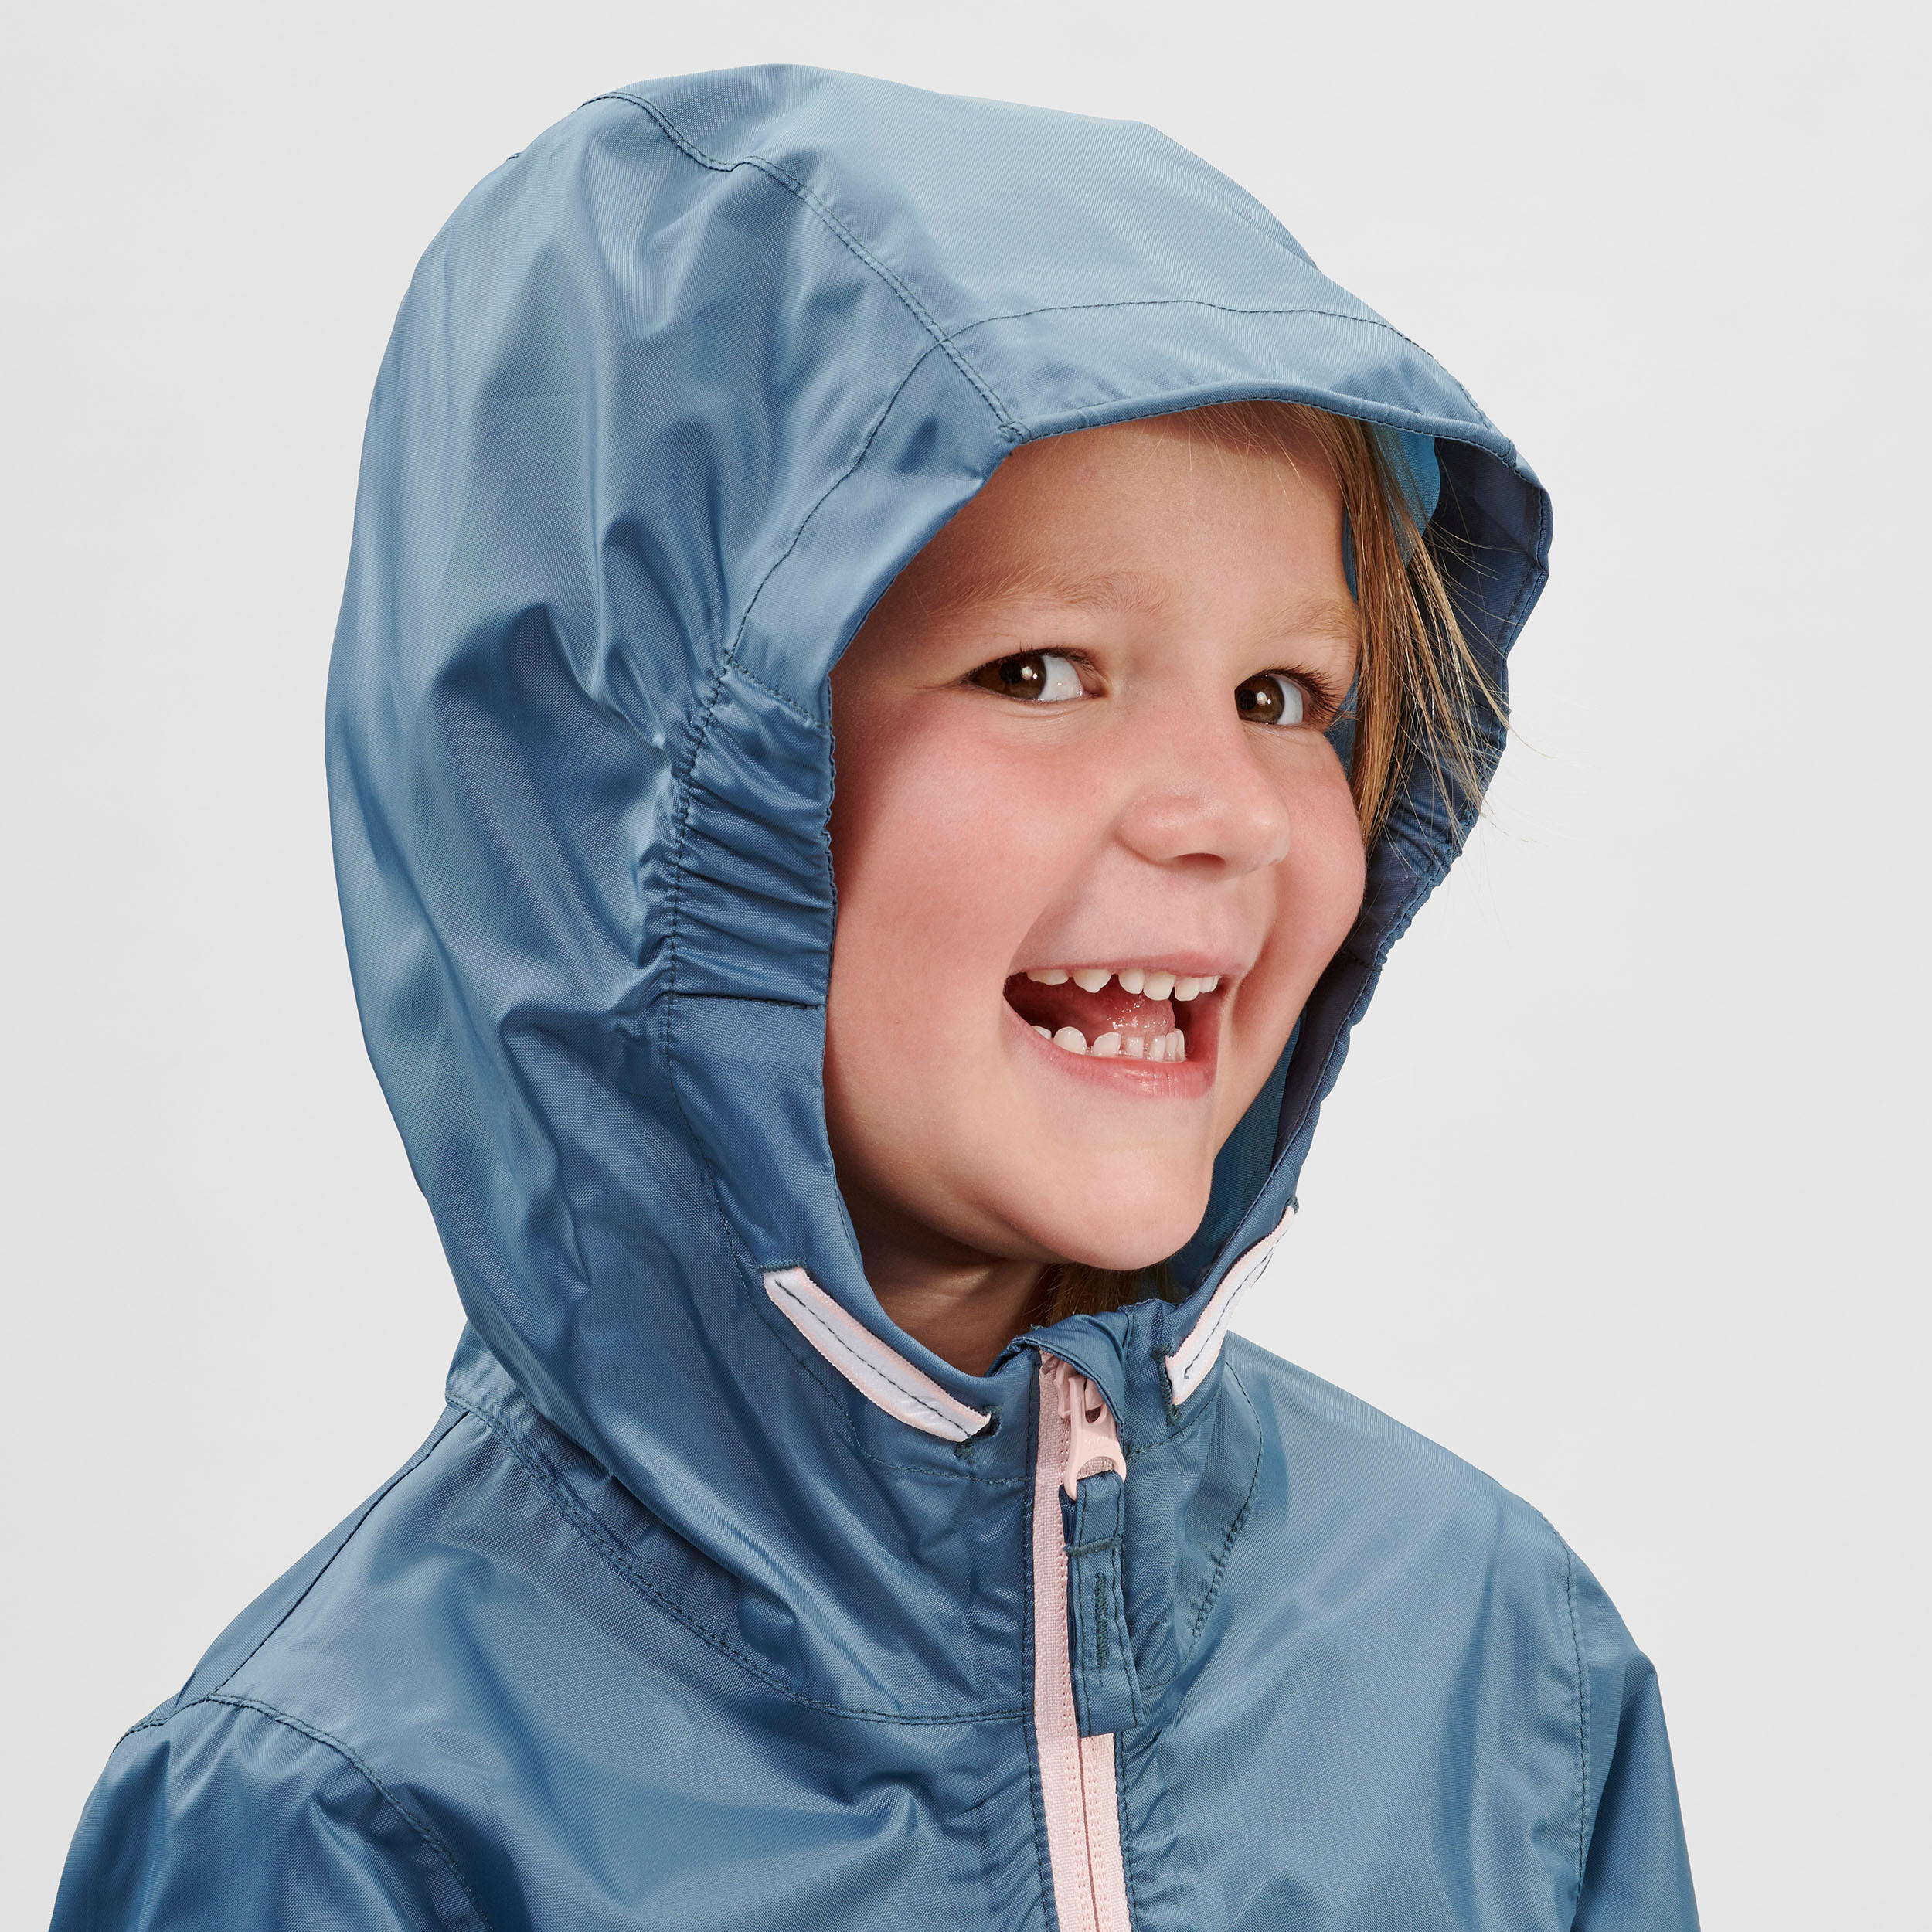 Kids’ Waterproof Hiking Jacket - MH100 Zip - Aged 2-6 5/8